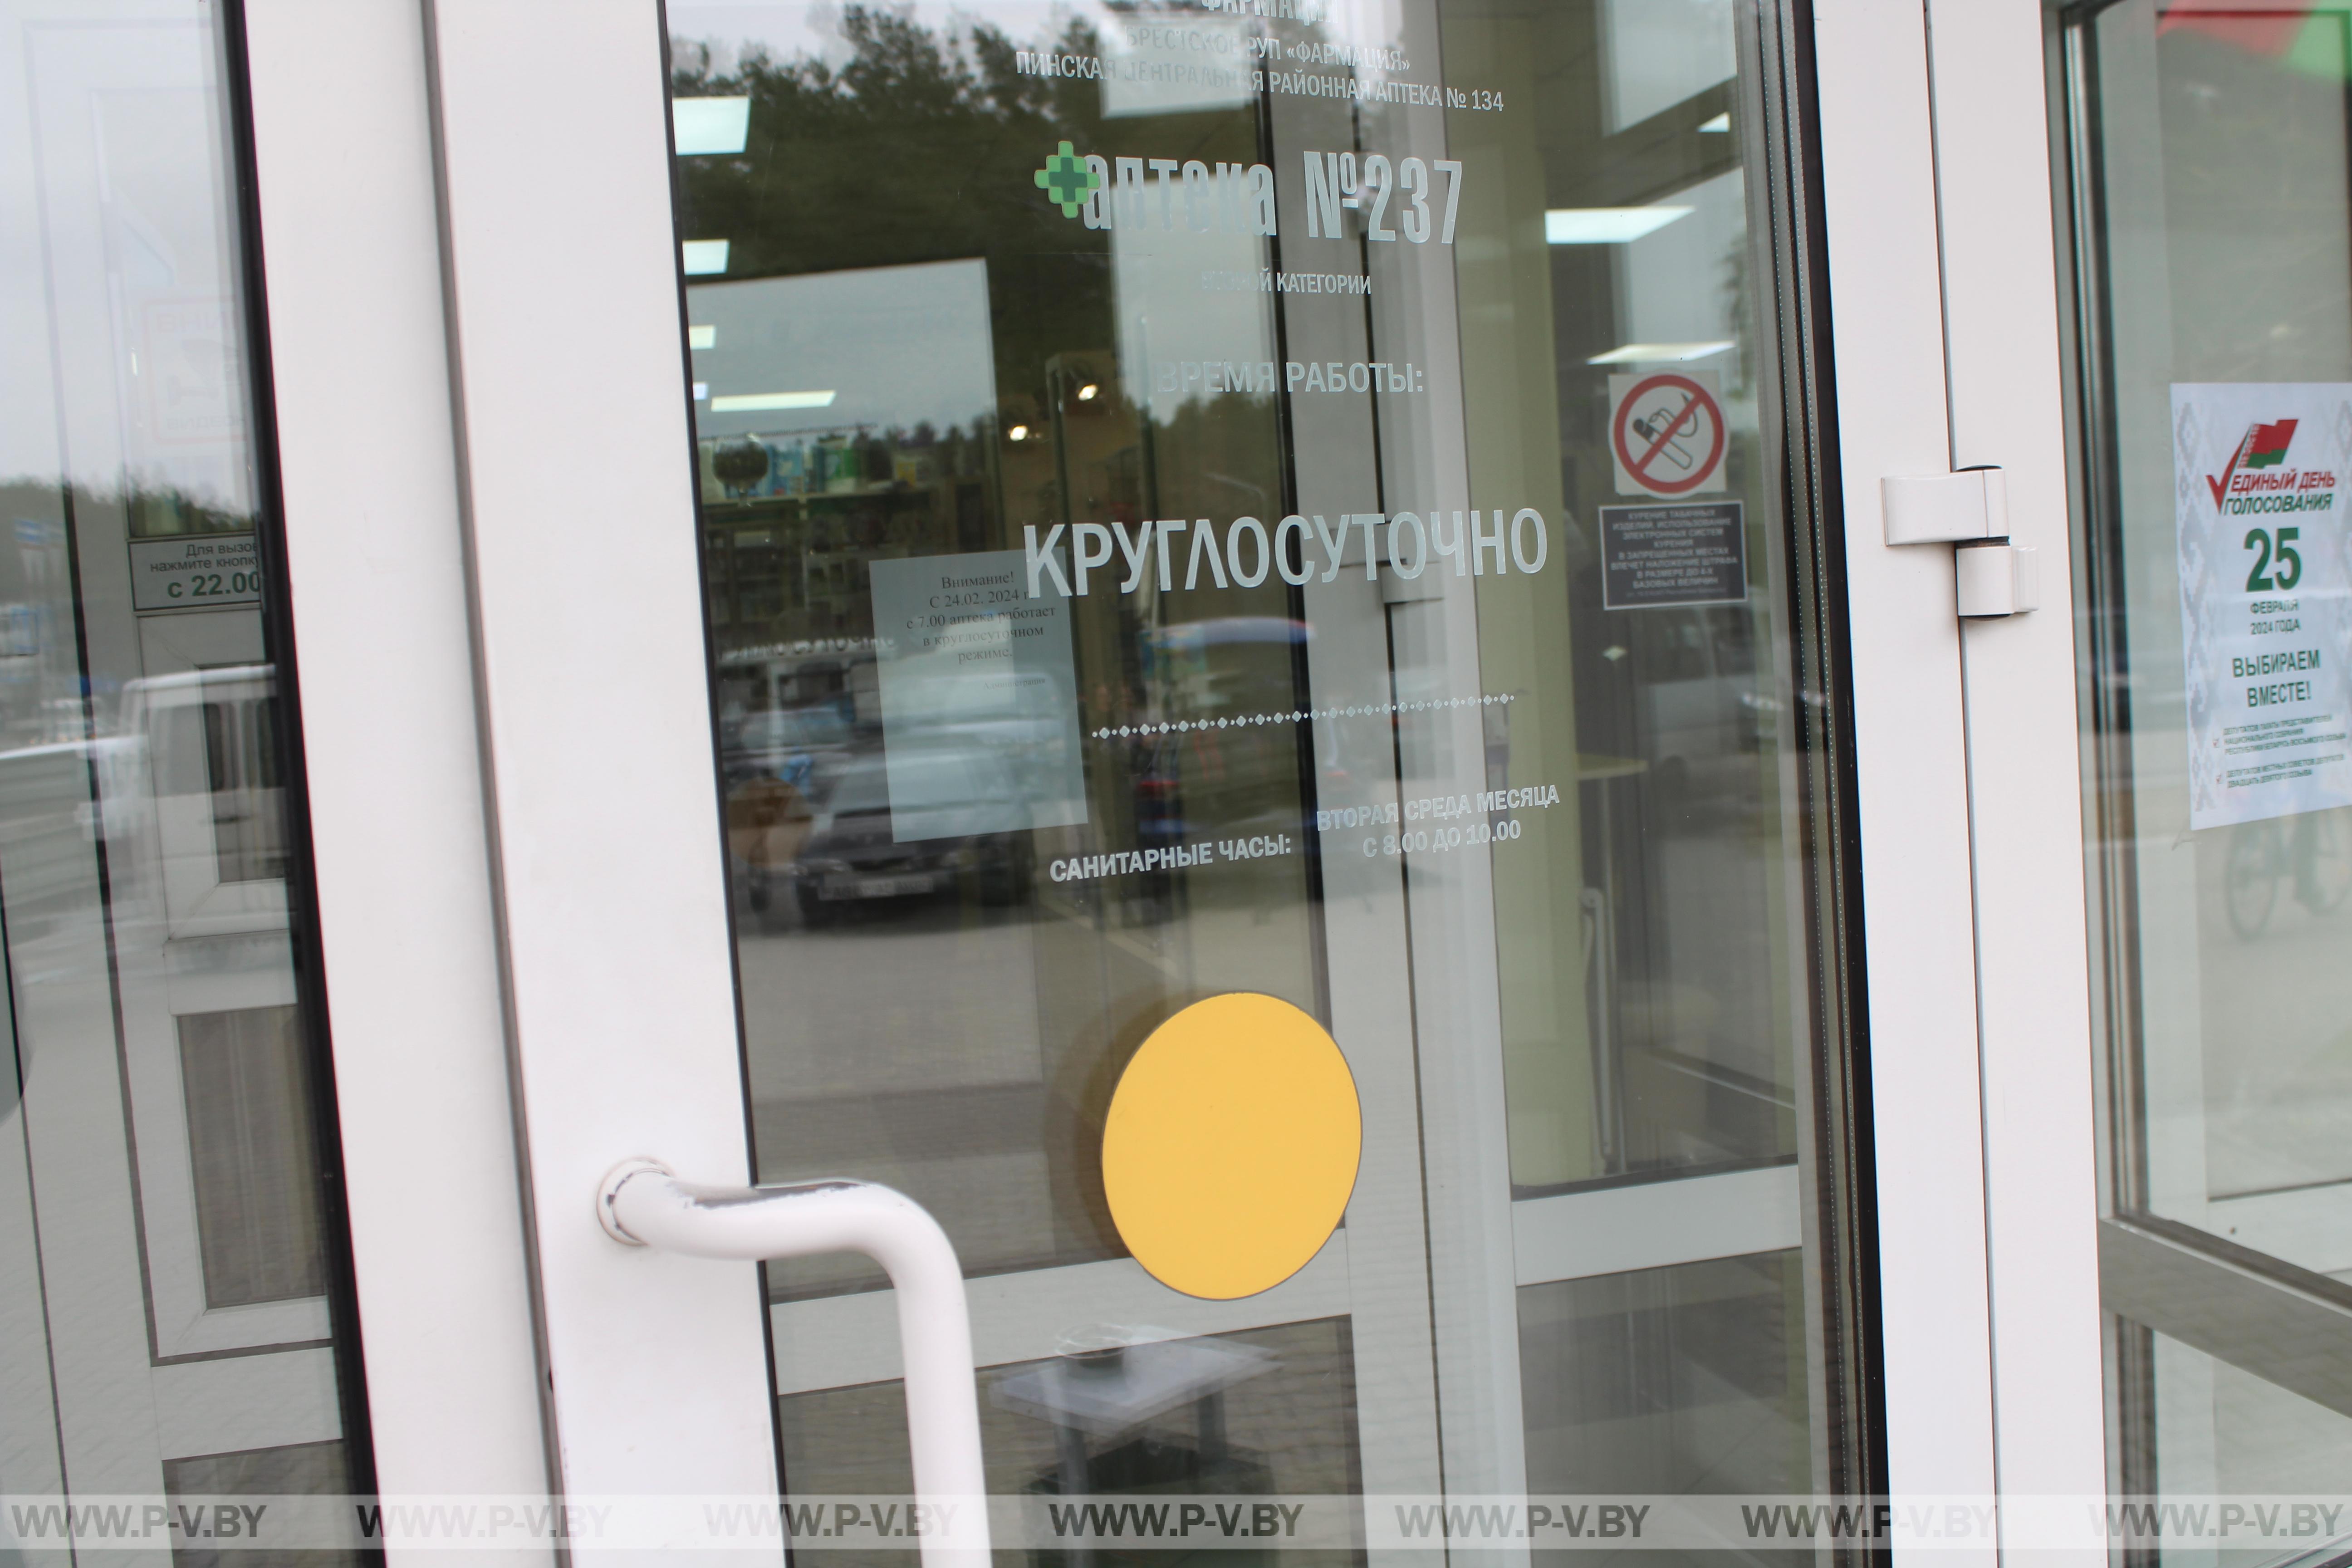 Уже завтра аптека на проспекте Жолтовского, 51 начнет работать в круглосуточном режиме